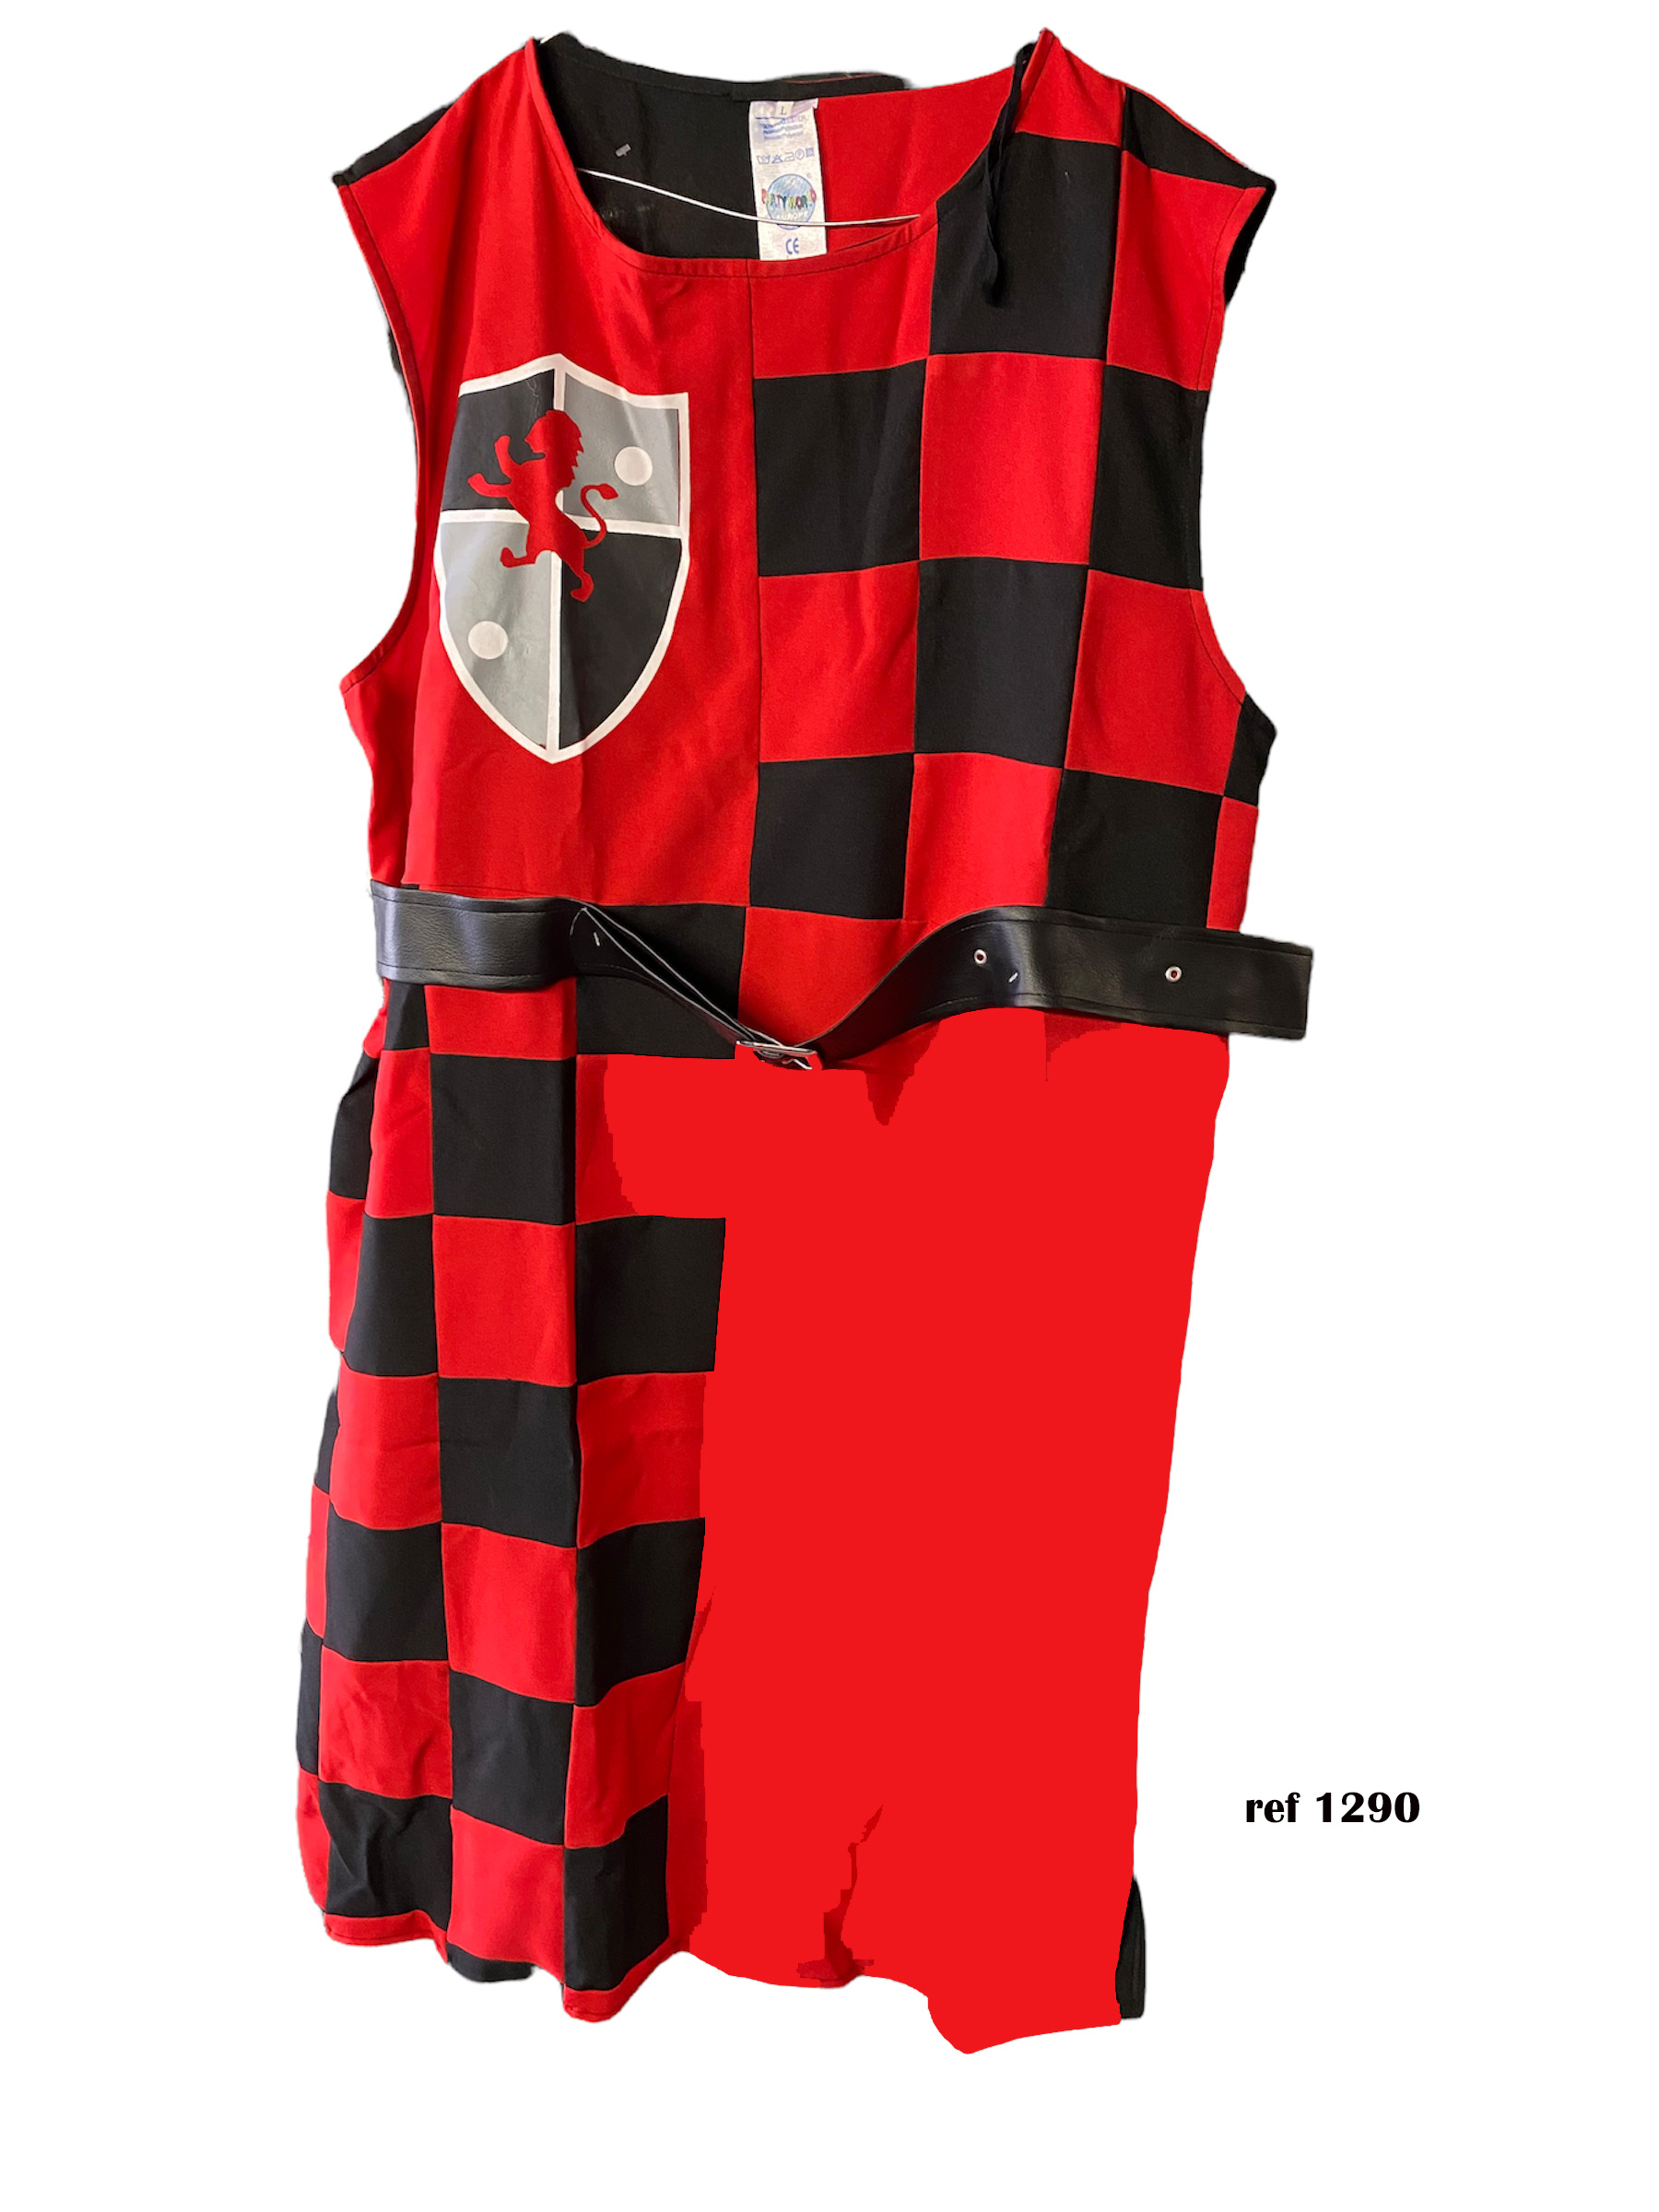 tunique tabard medievale rouge et noire